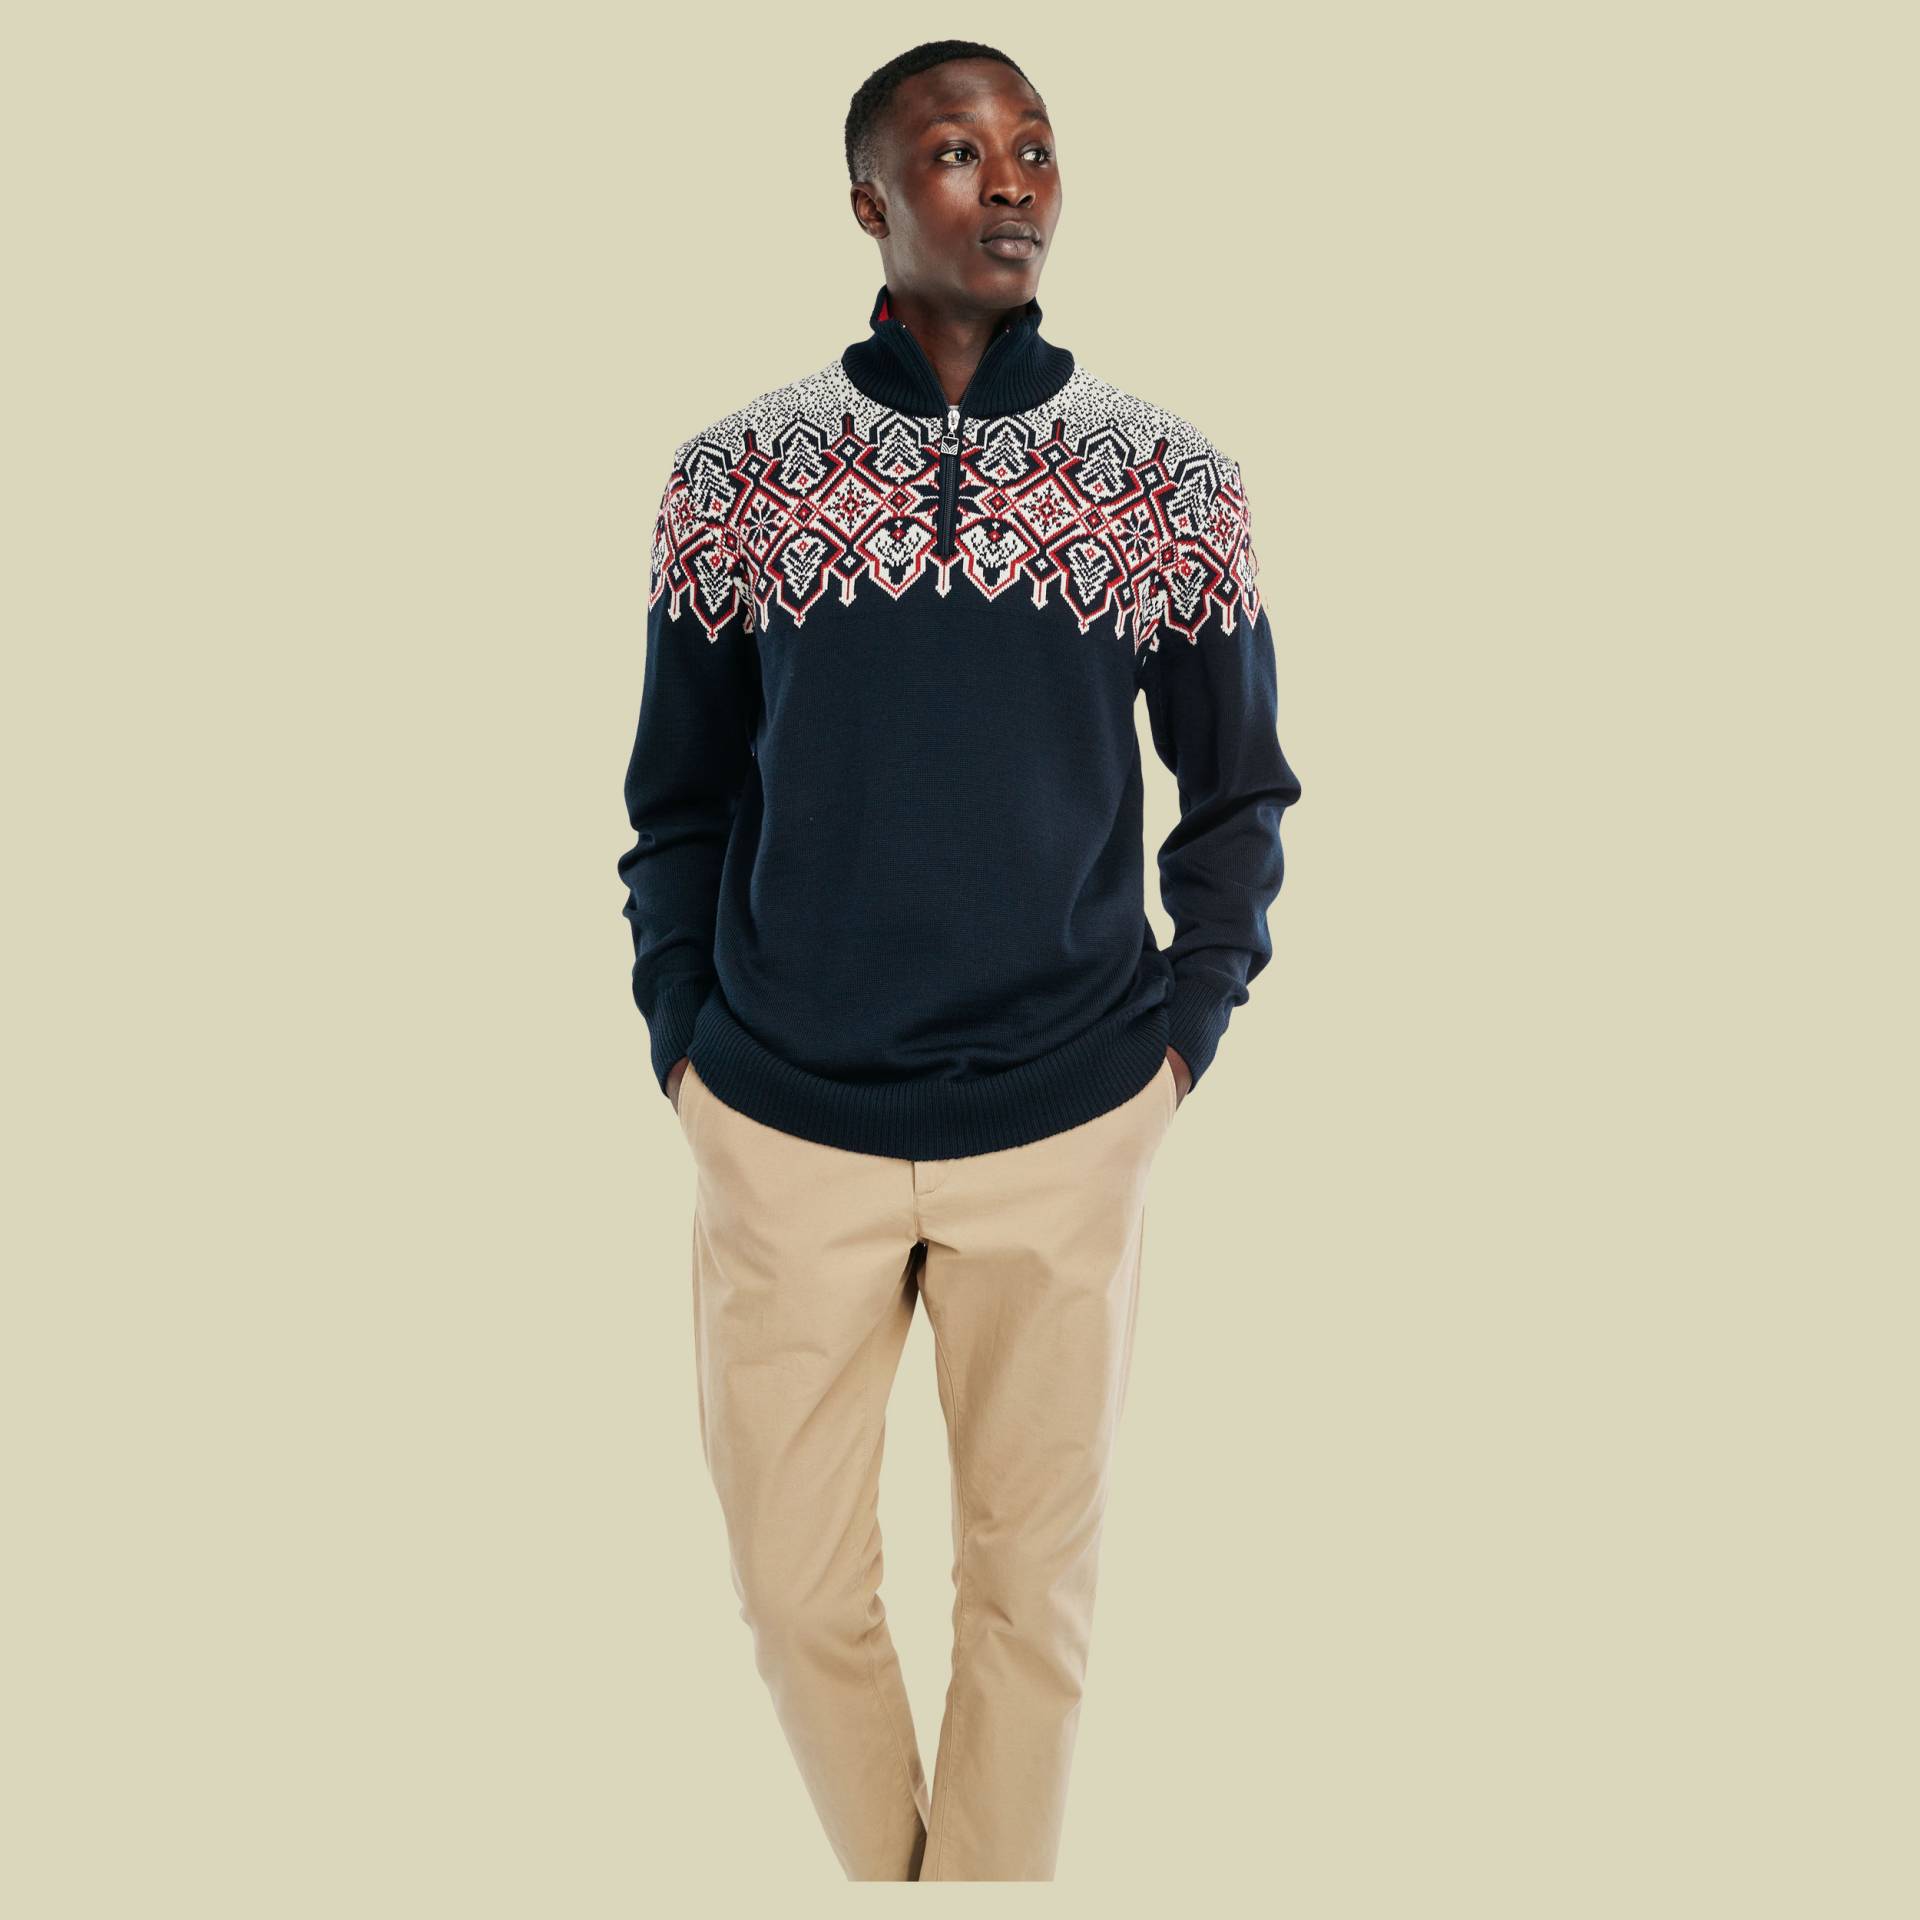 Winterland Sweater Men Größe XXL Farbe navy-off white-raspberry von Dale of Norway